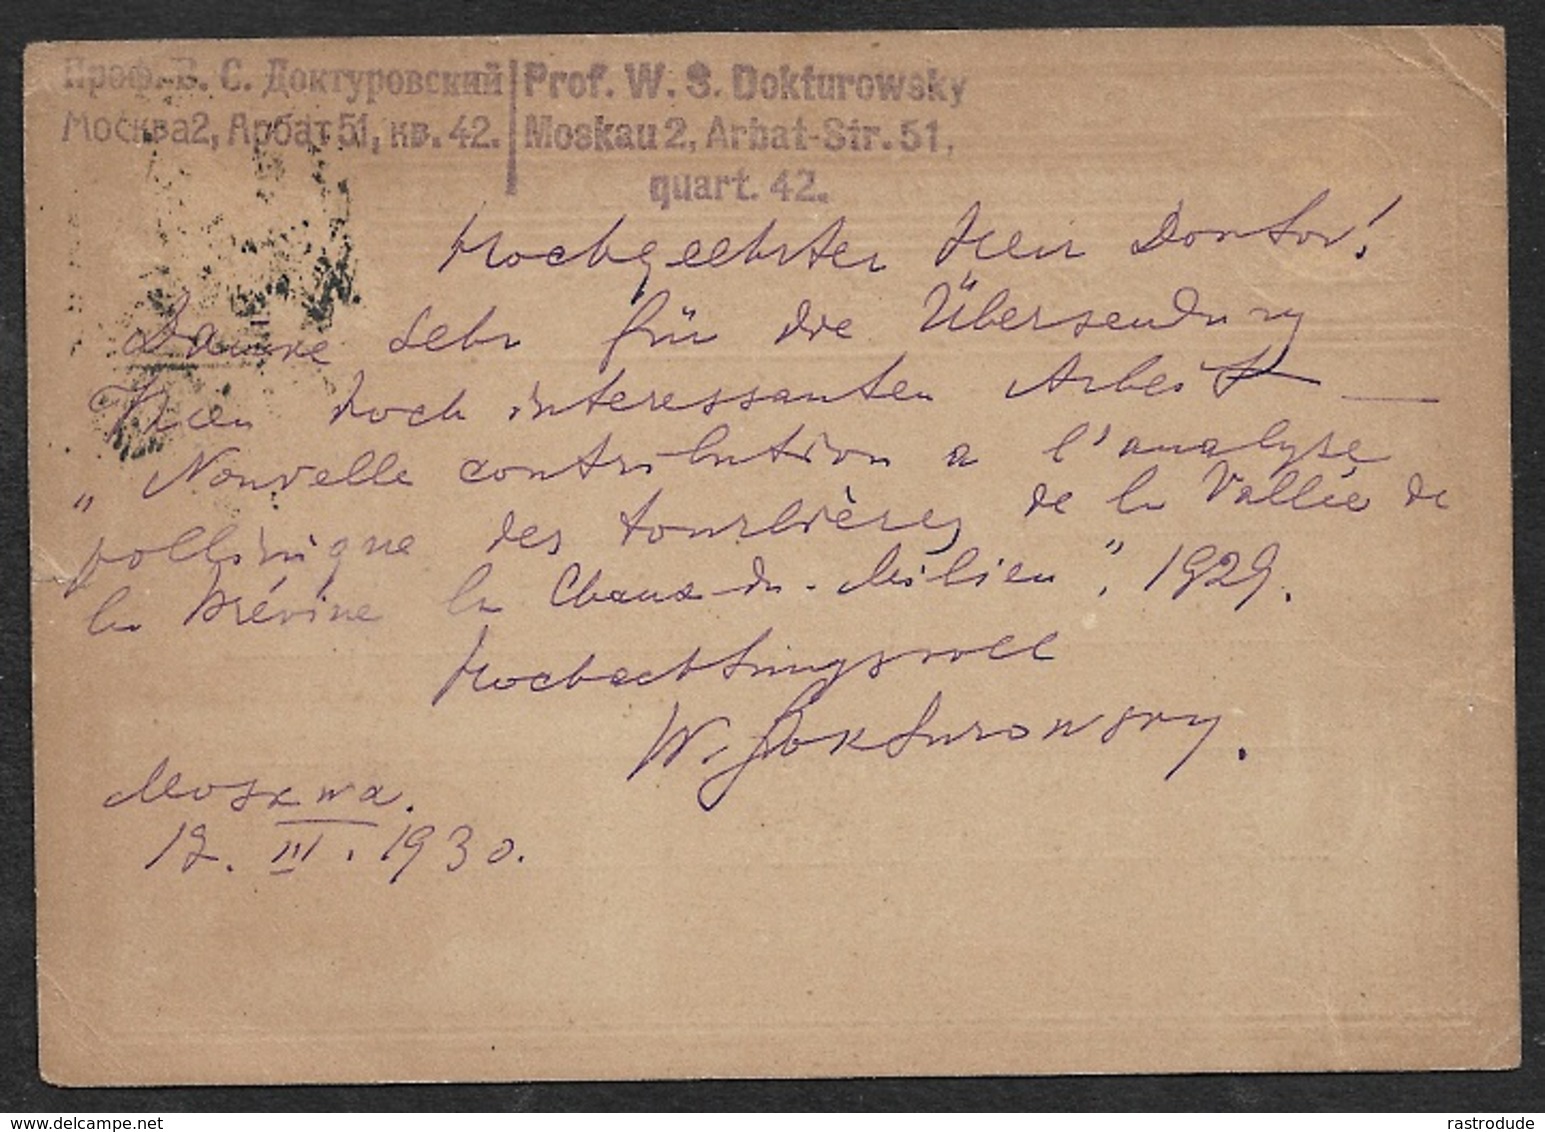 1930 SOVIET UNION GS Mi. P 72 - N. NEUCHATEL, SCHWEIZ - V. PROF. DOKTUROWSKY An PROF. HENRI SPINNER - BOTANIK - Storia Postale